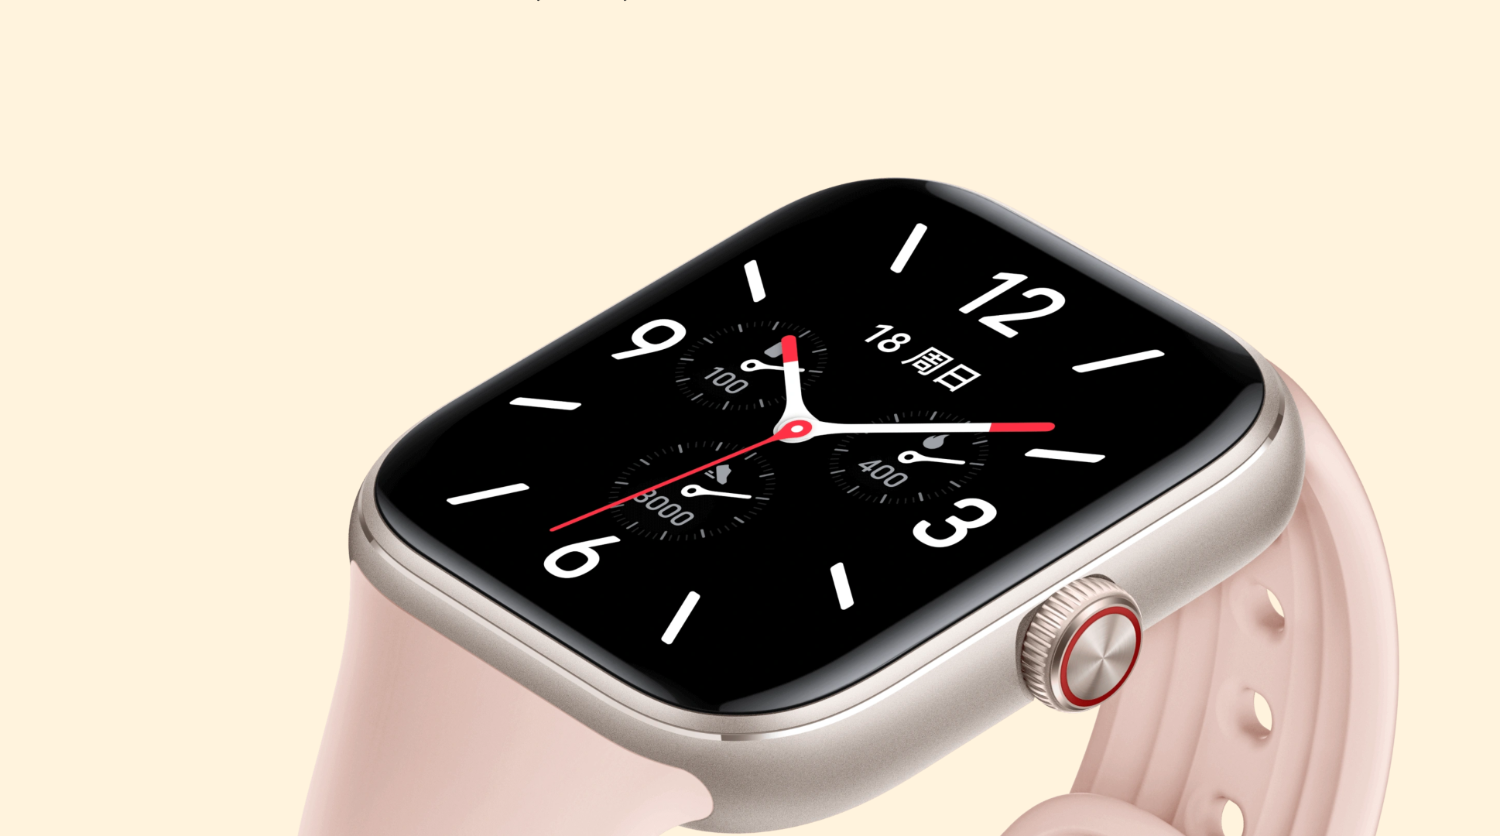 Vivo впервые представила умные часы в дизайне Apple Watch1